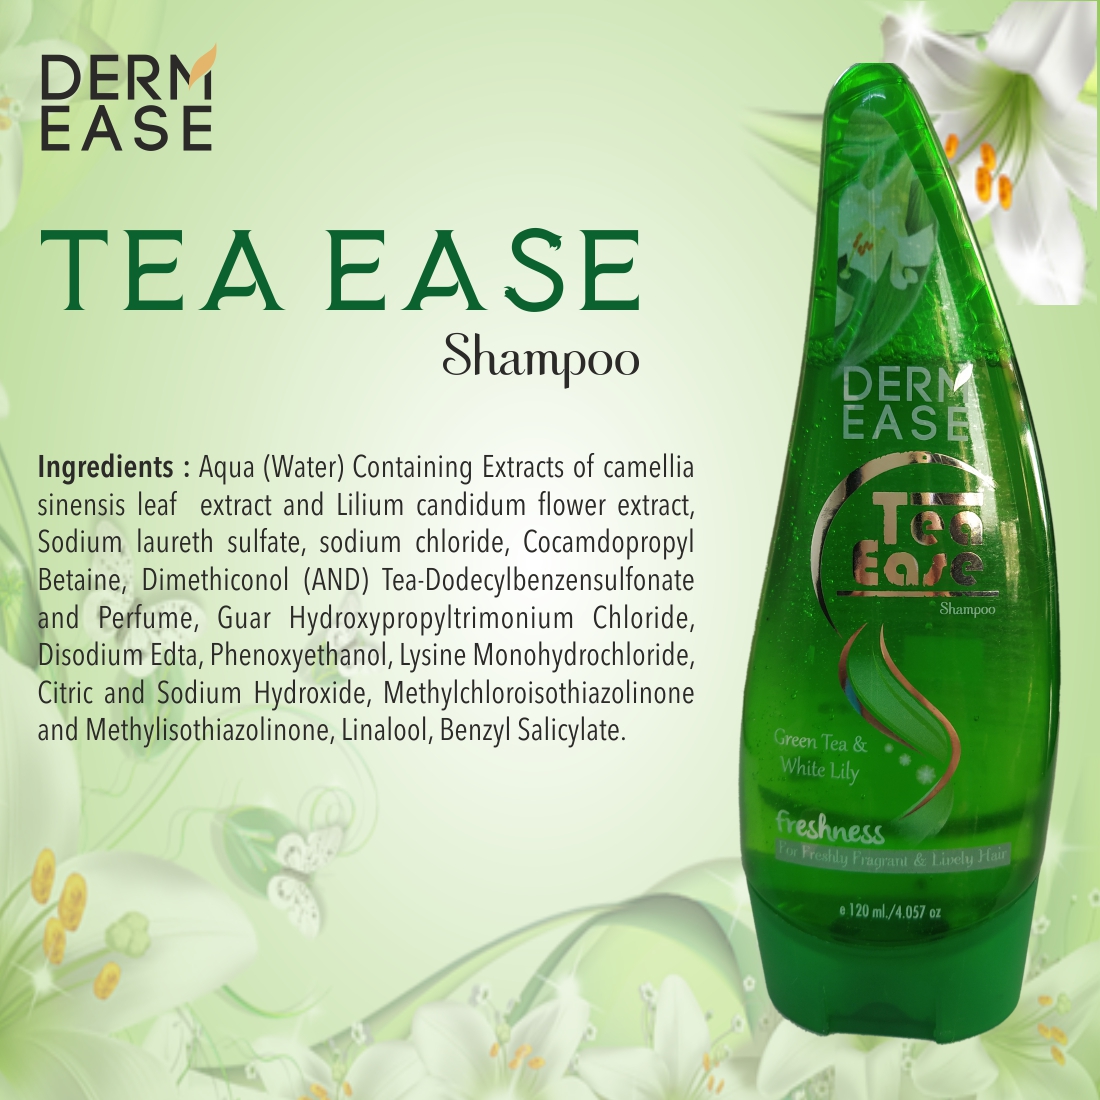 DERM EASE Tea Ease Shampoo